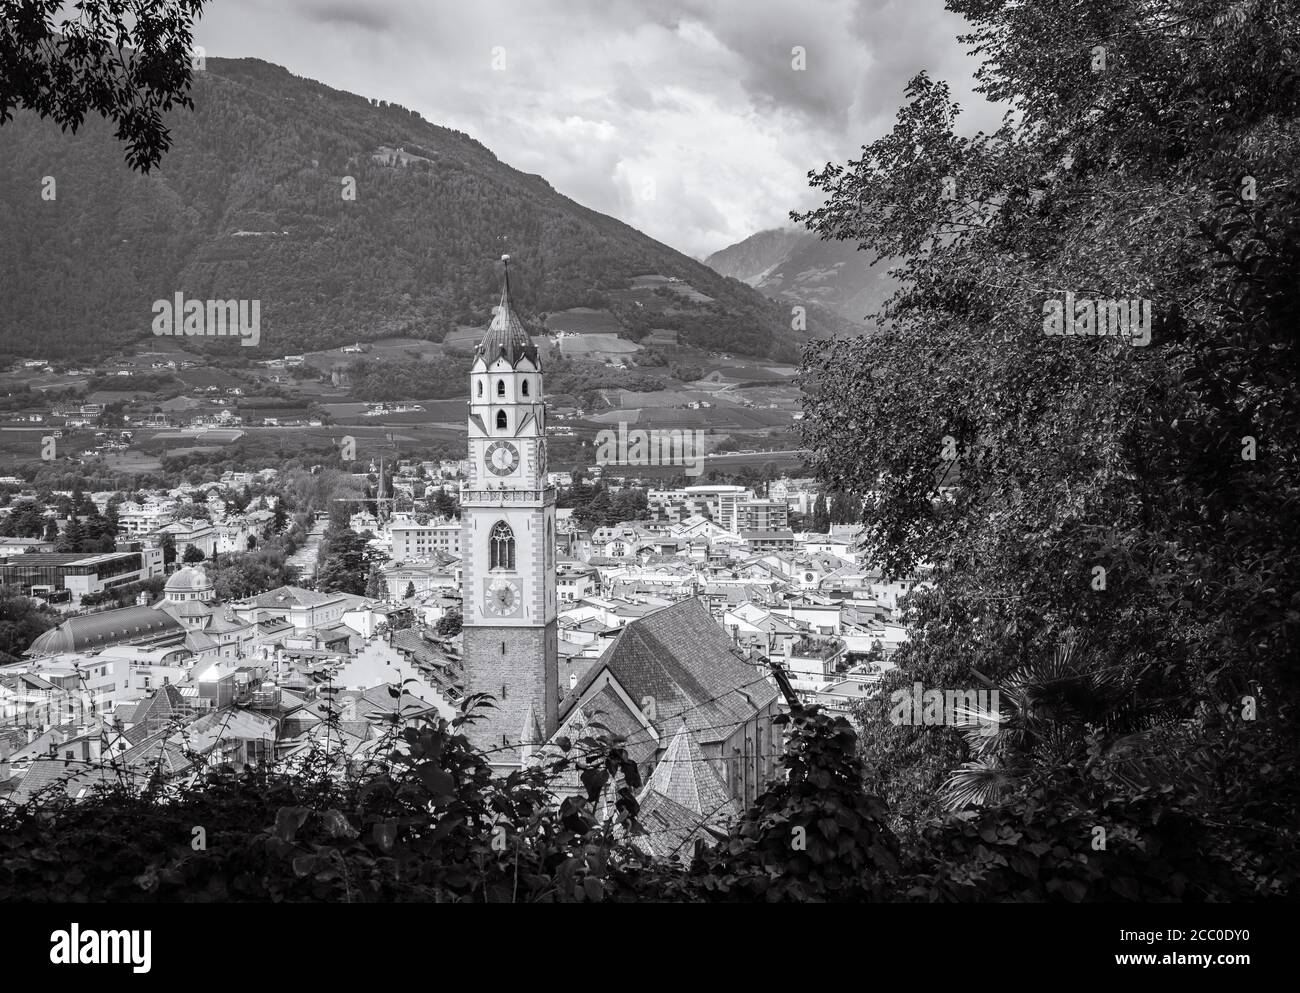 Meran (Meran) in Südtirol - Trentino-Südtirol - Norditalien. Schöne Stadt Trentino Alto Adige. Blick von oben. Bild in Schwarzweiß Stockfoto